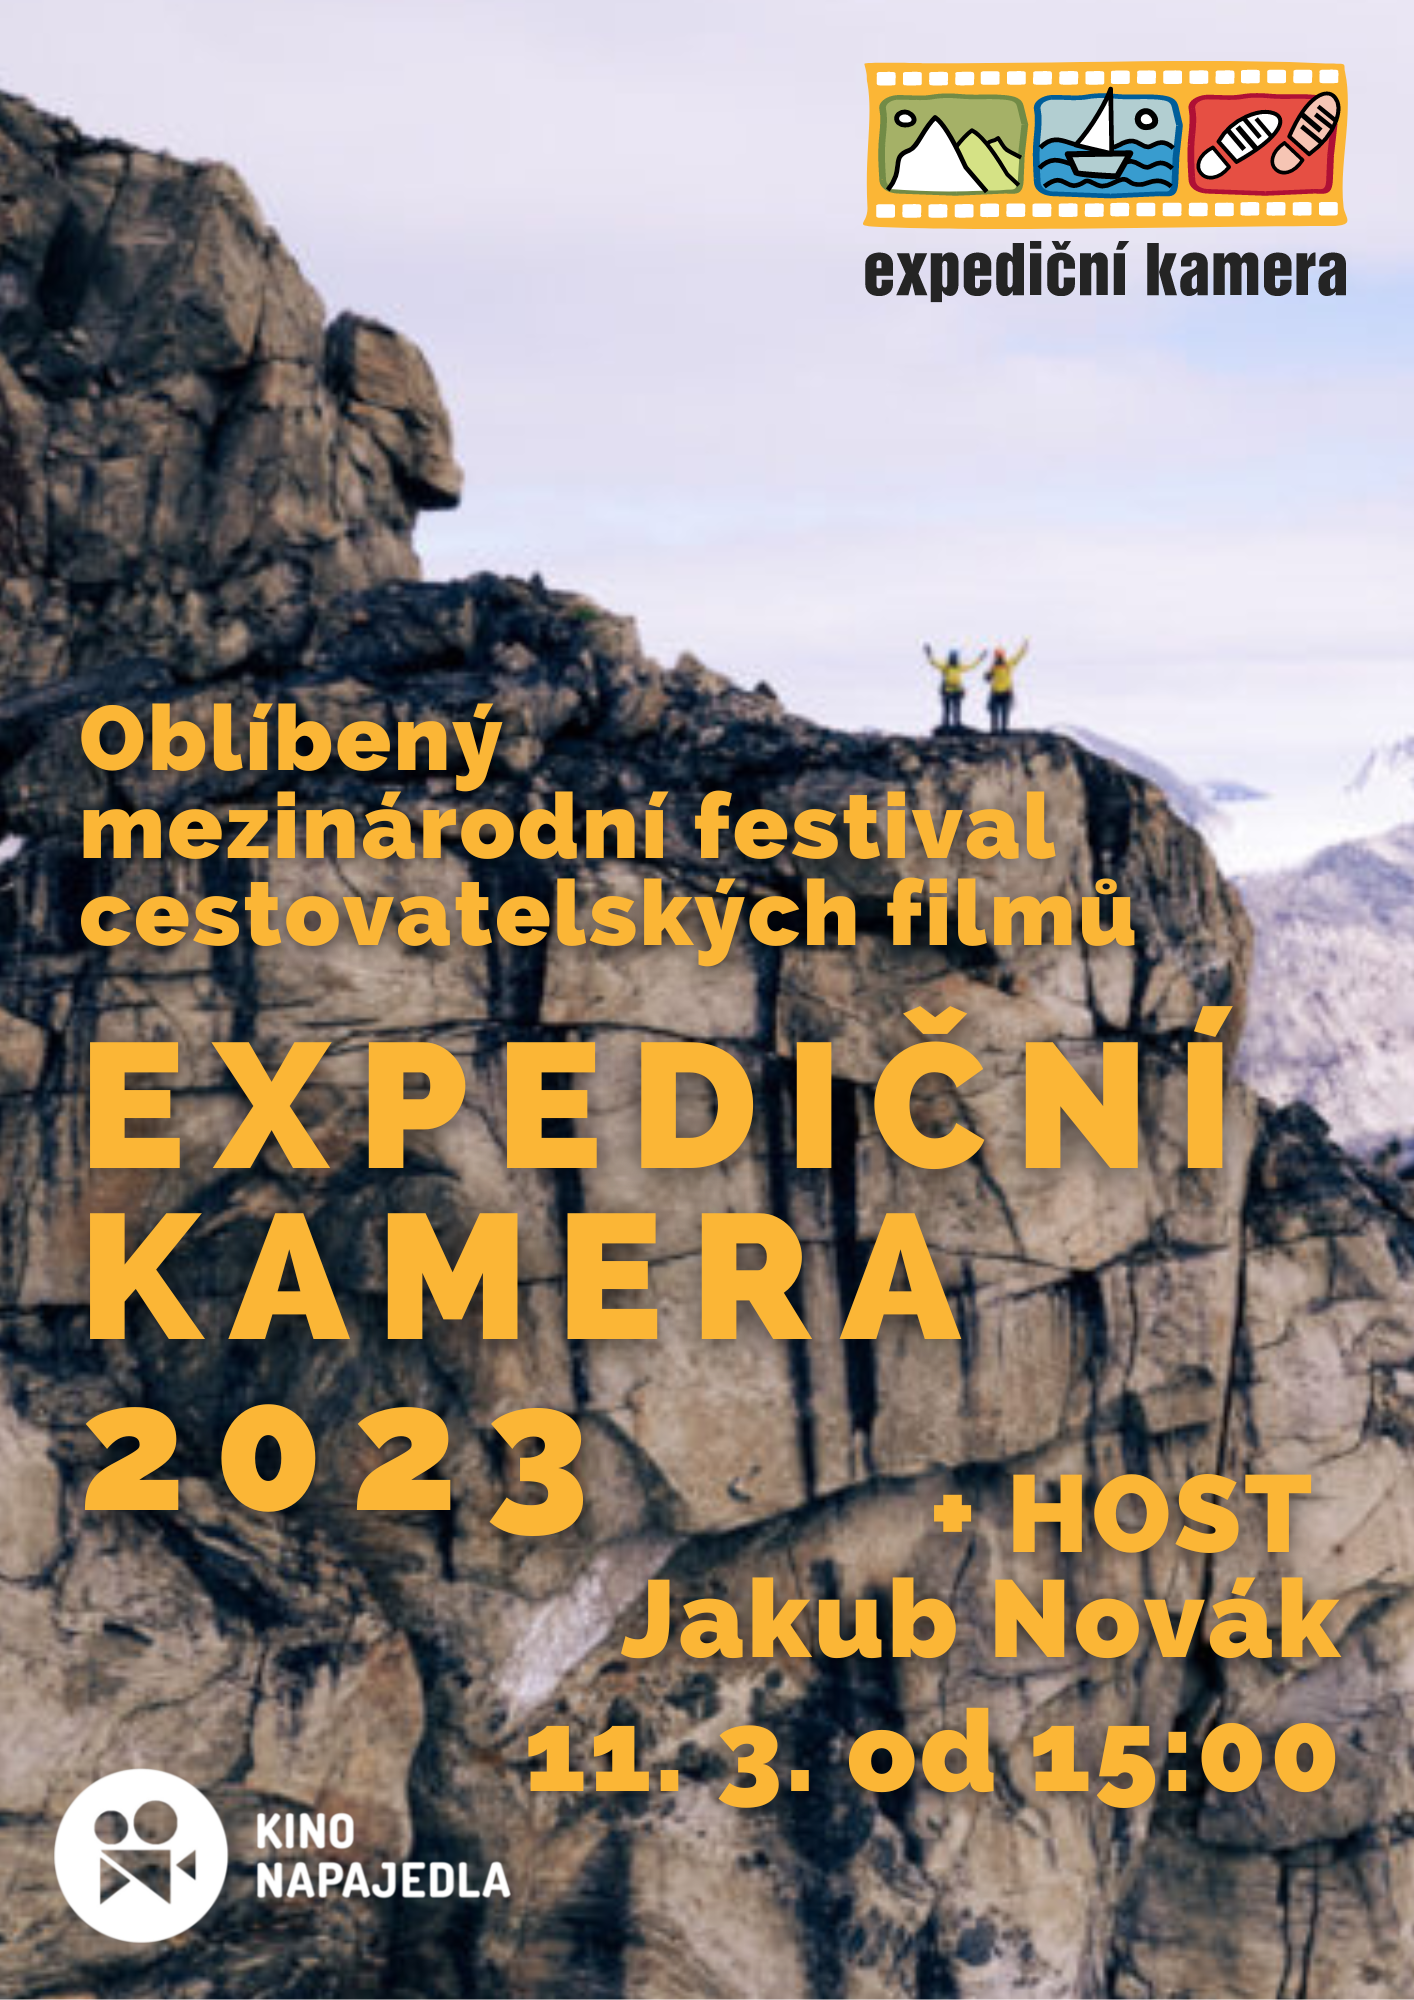 Expediční kamera 2023 + HOST Jakub Novák